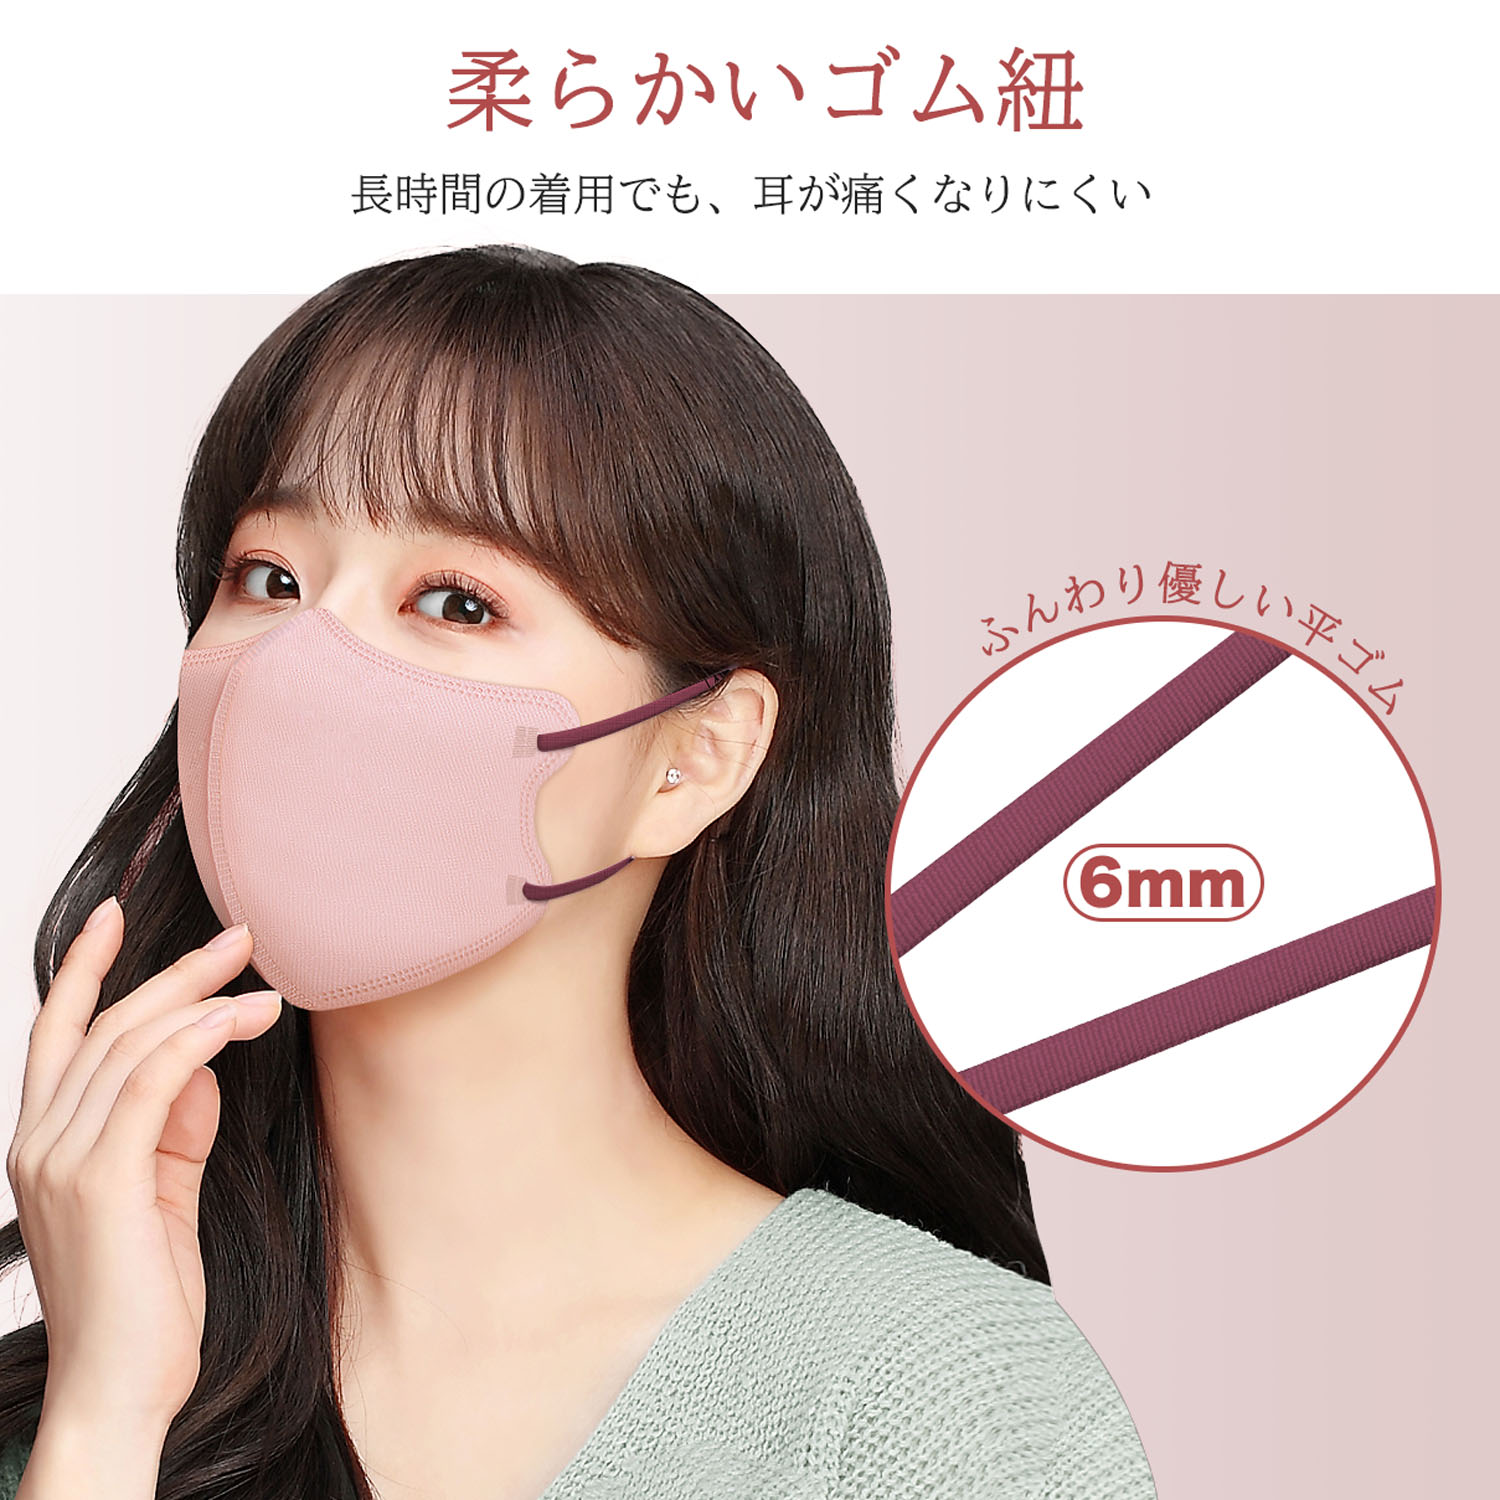 立体マスク 3D 不織布 日本製 カラー くちばし 10枚 小顔 使い捨て メガネが曇りにくい 呼吸しやすい 口紅に付かない 耳が痛くならない 熱中症対策917545